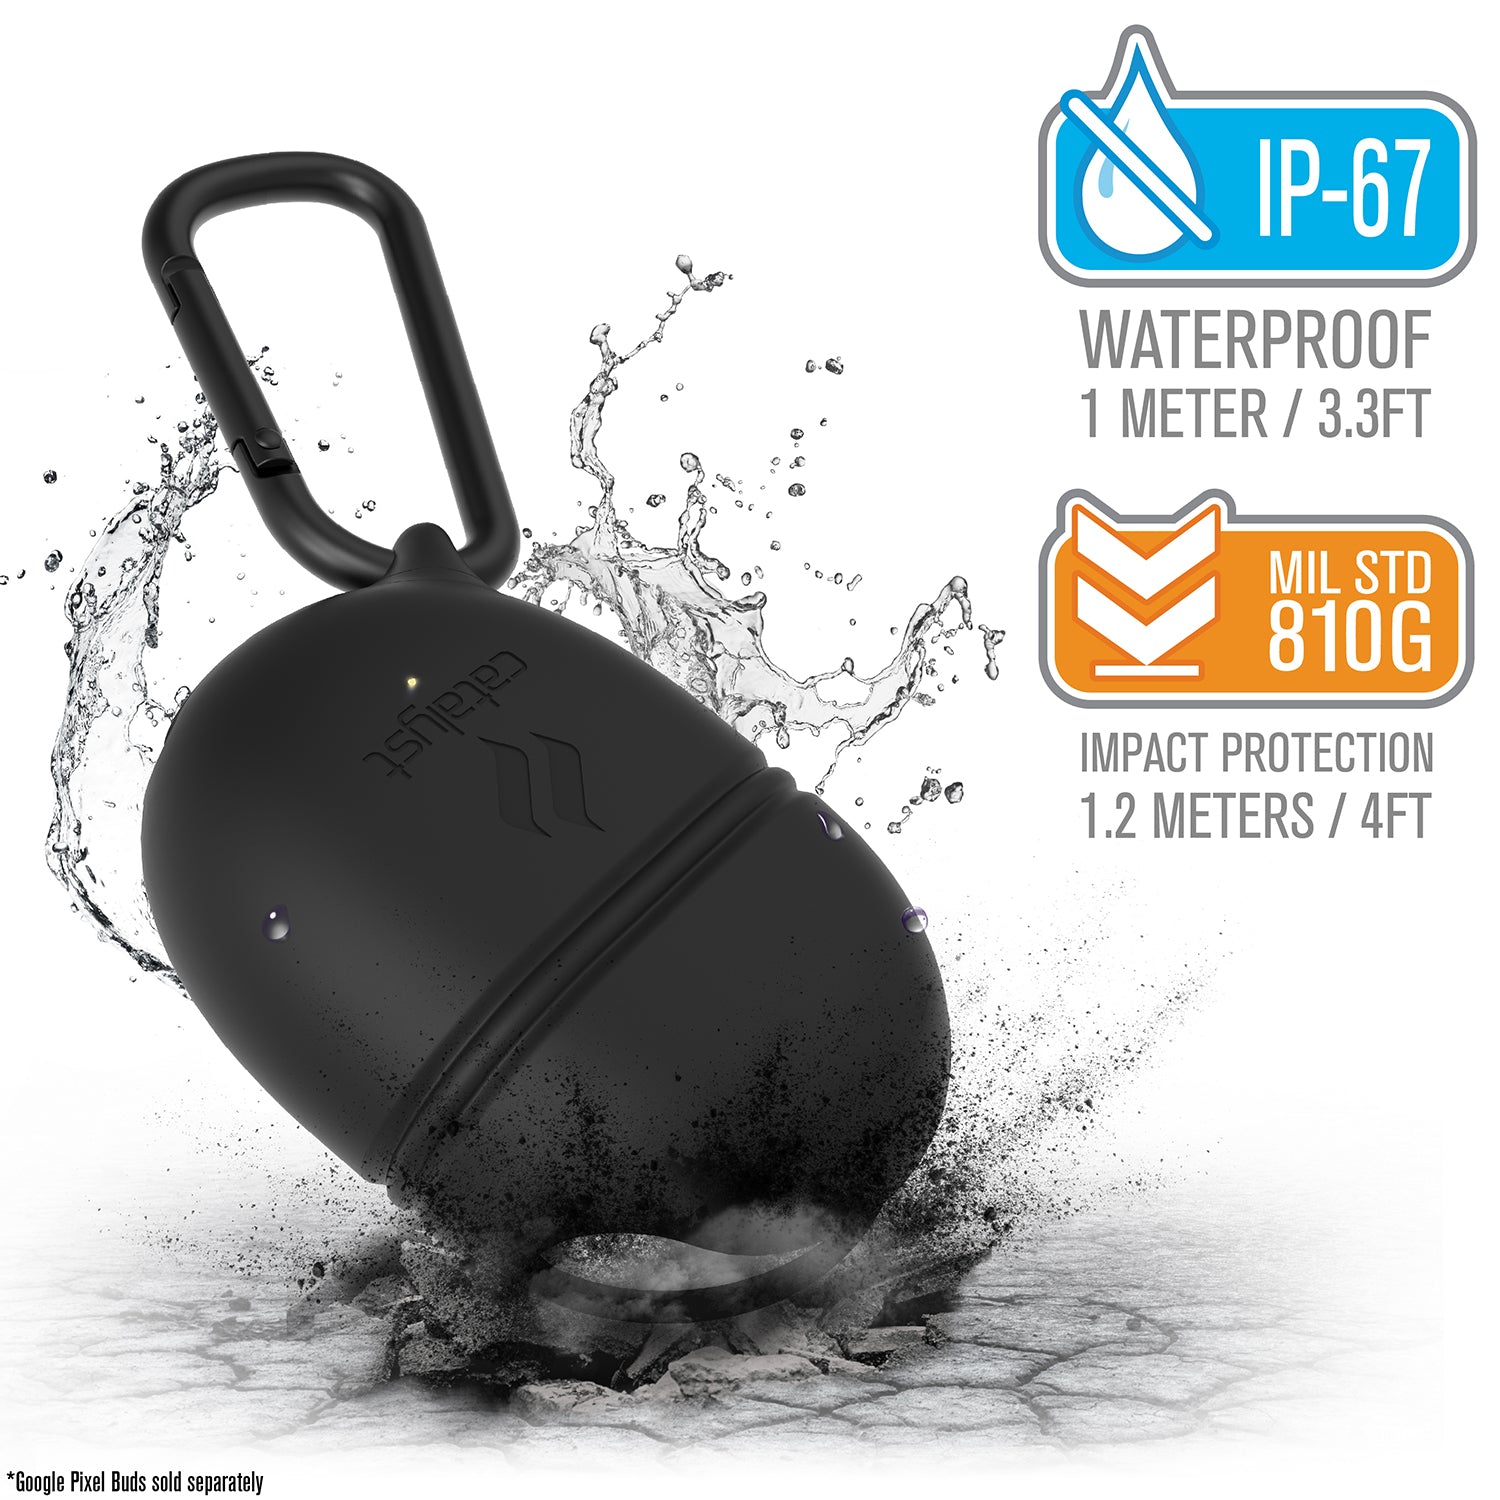 Google Pixel Buds 2 - Waterproof Case + Carabiner